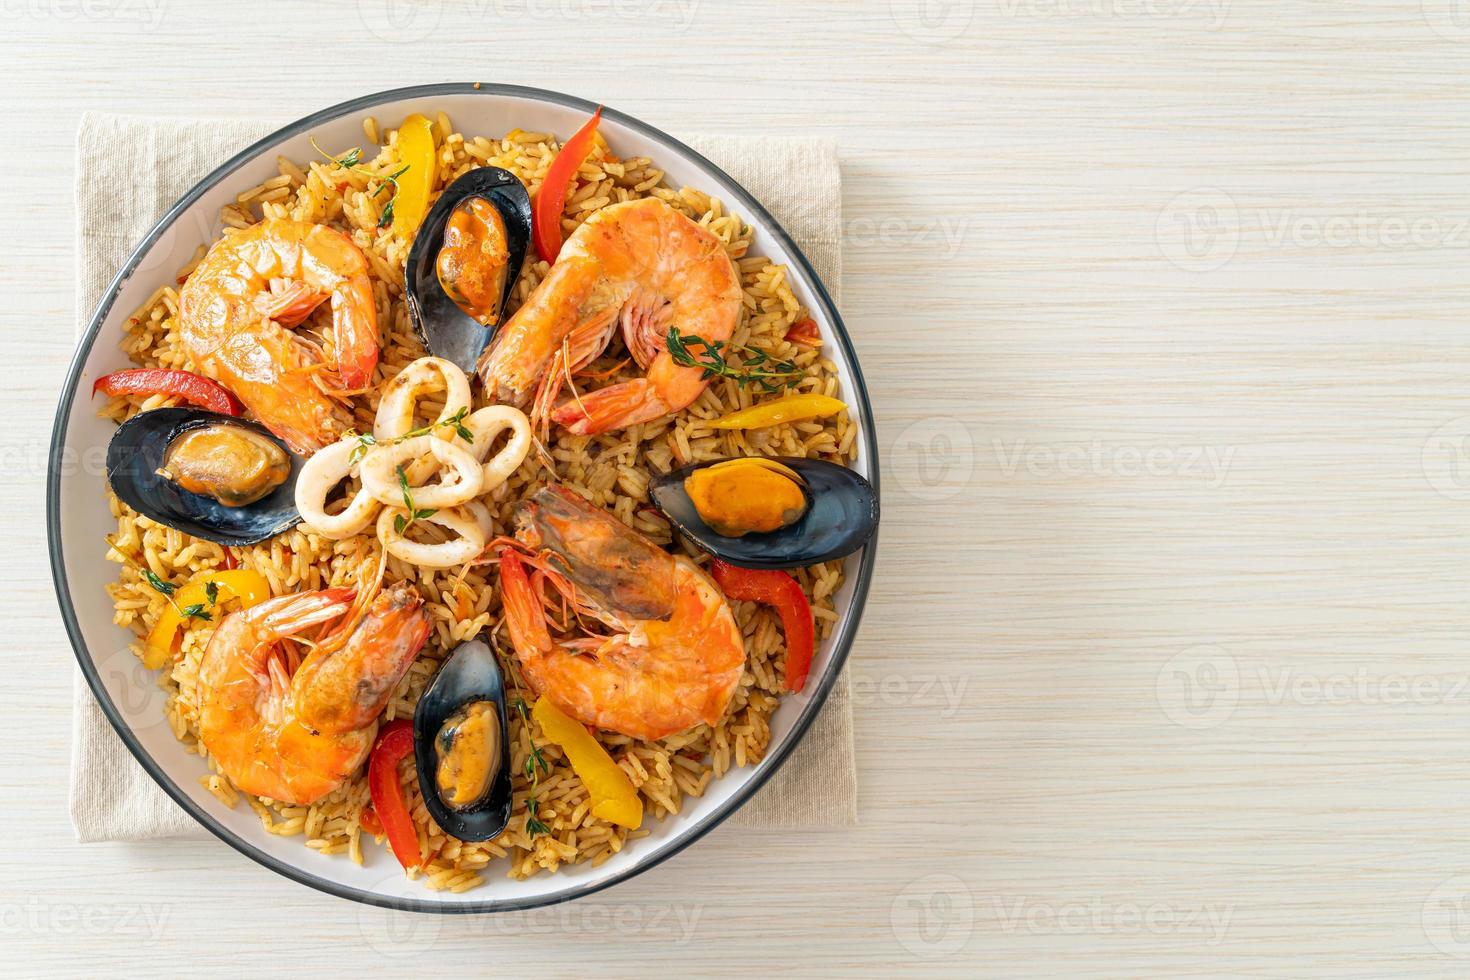 zeevruchtenpaella met garnalen, kokkels, mosselen op saffraanrijst foto